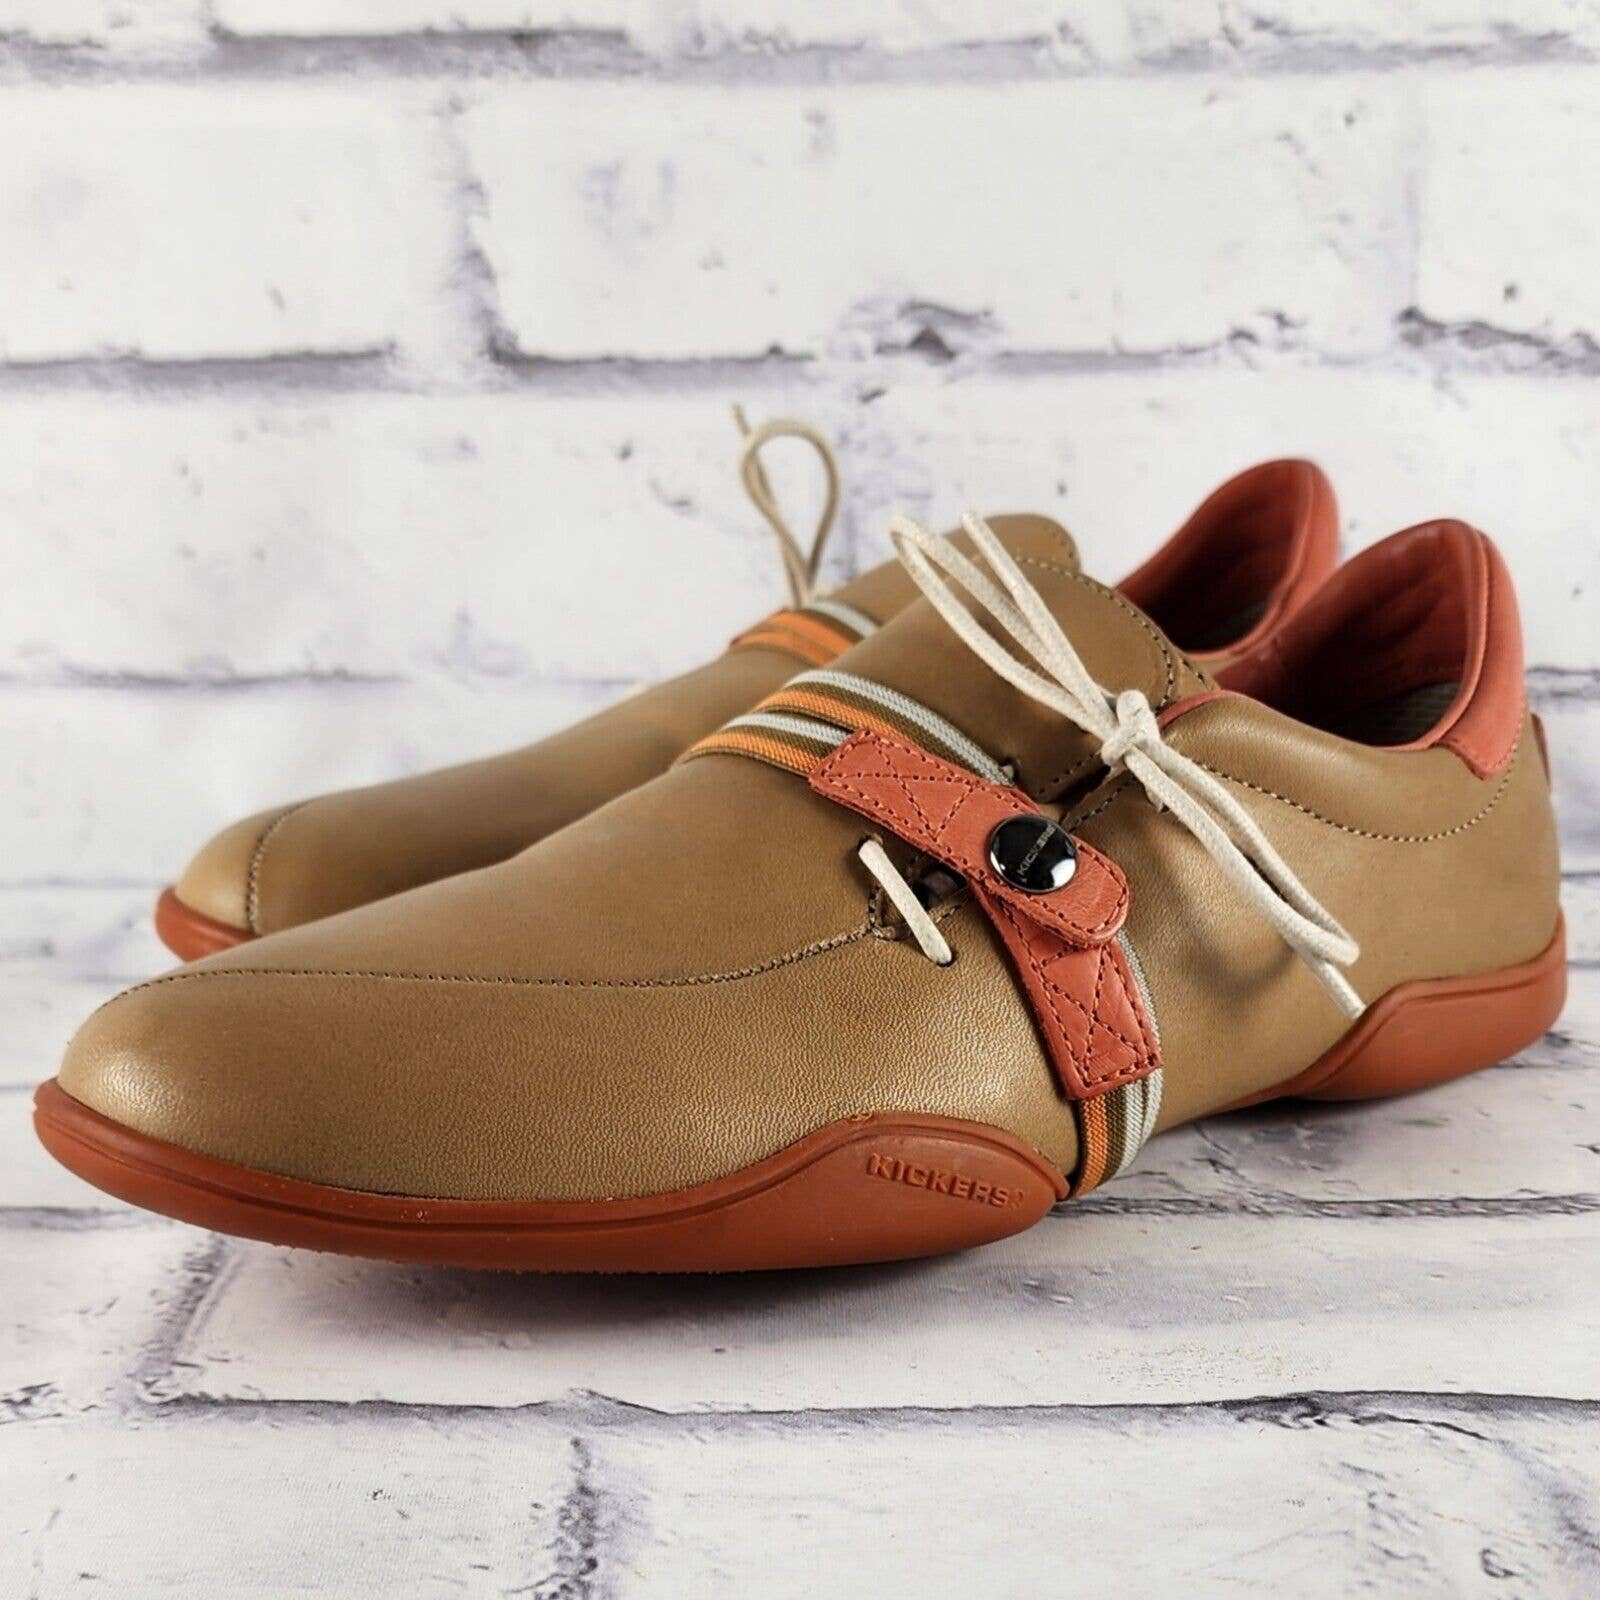 Kickers Side Lace Flats Women's Sz 38 (US 7.5) Beige & Orange Leather Sneakers